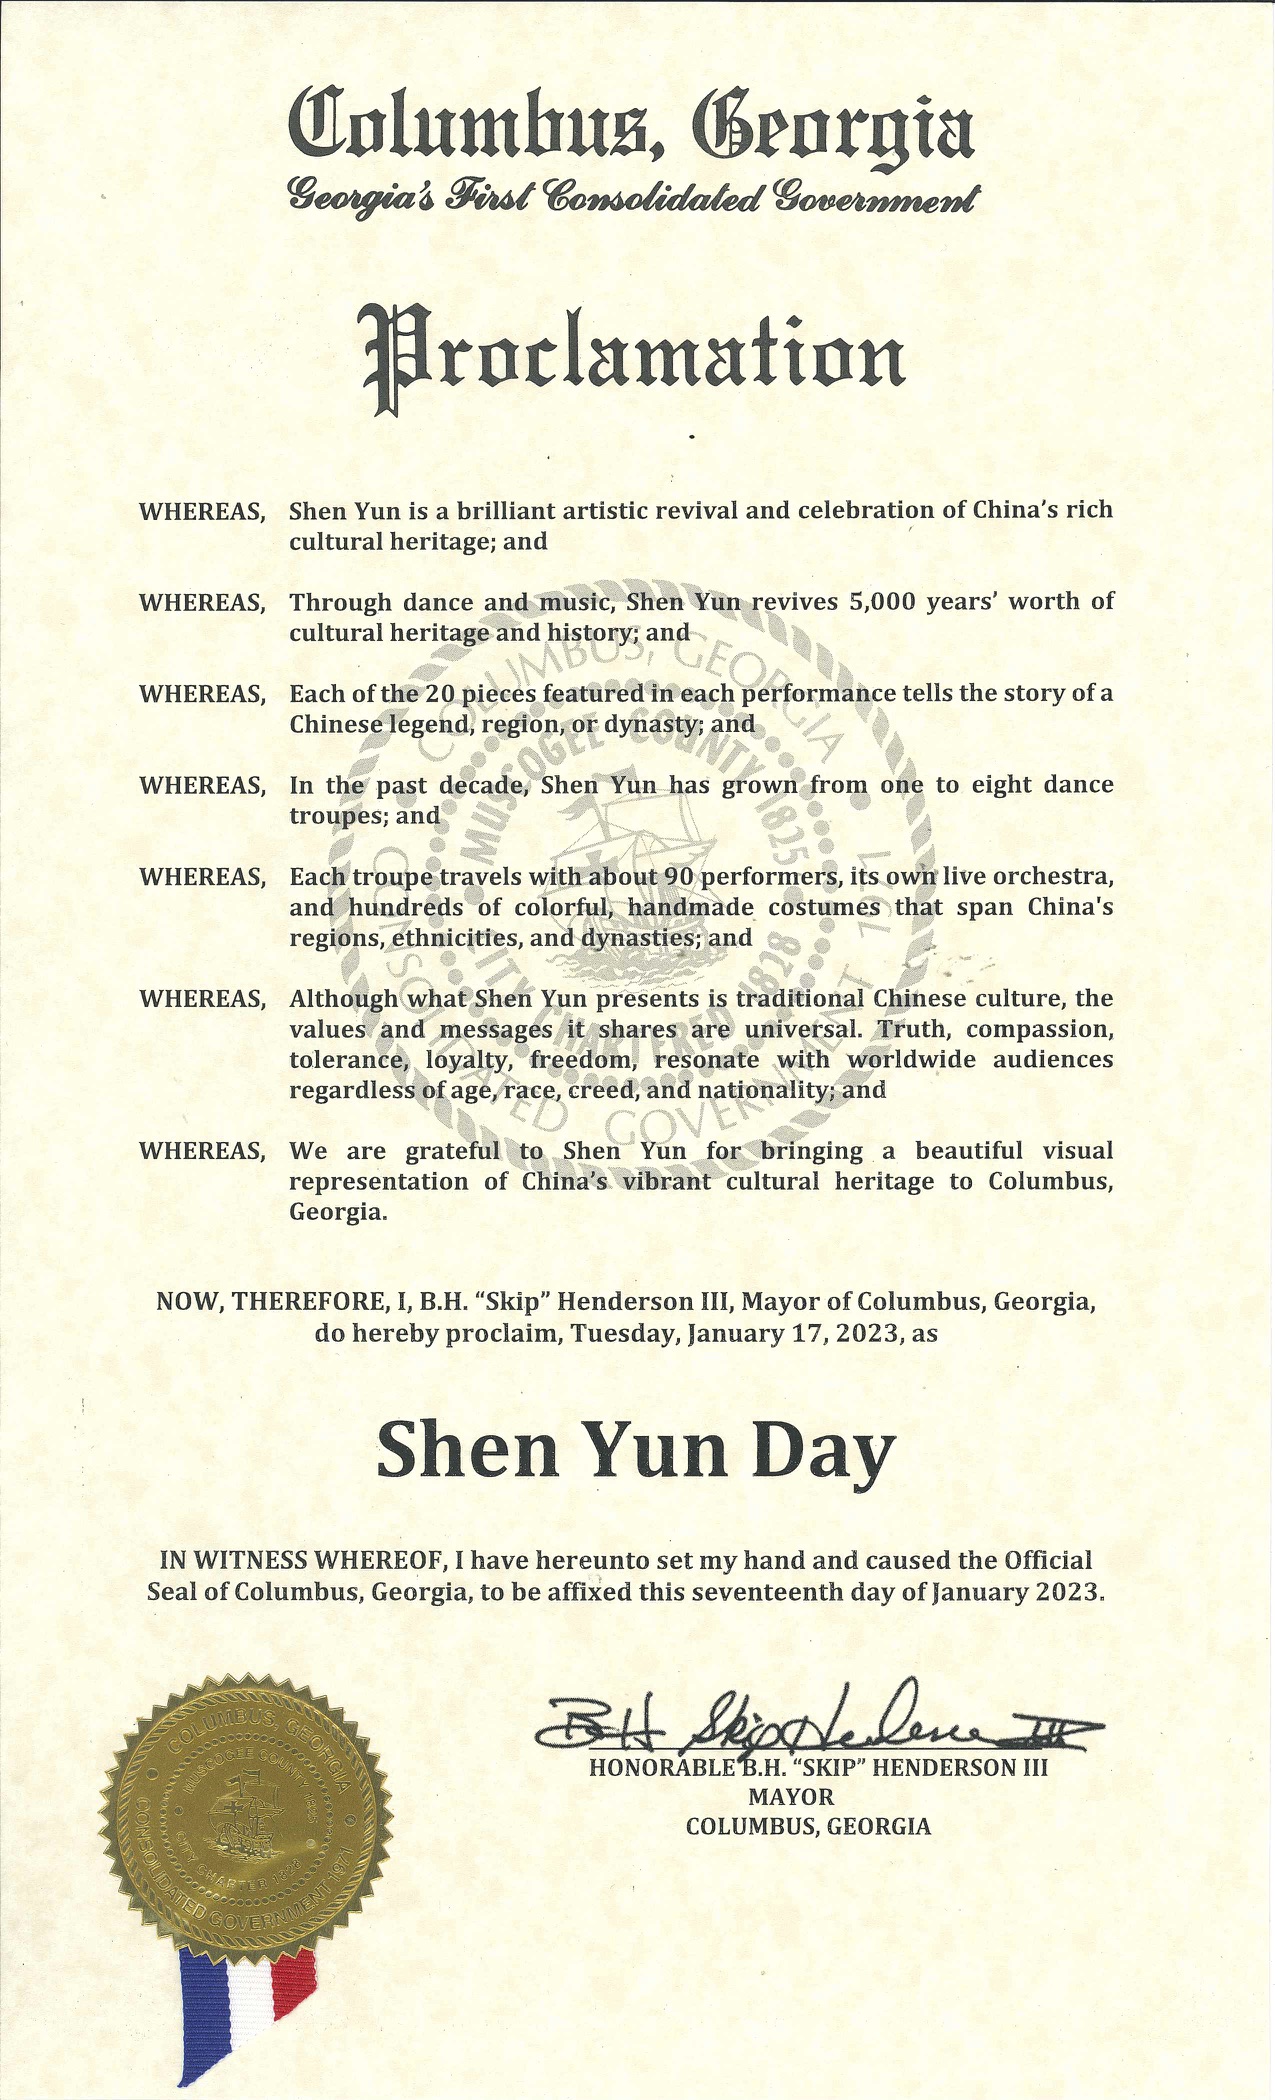 图7：乔治亚州哥伦布市长亨德森（B.H. Henderson）颁发给神韵的褒奖，将神韵在该市的演出日，二零二三年一月十七日，定为“神韵日”。